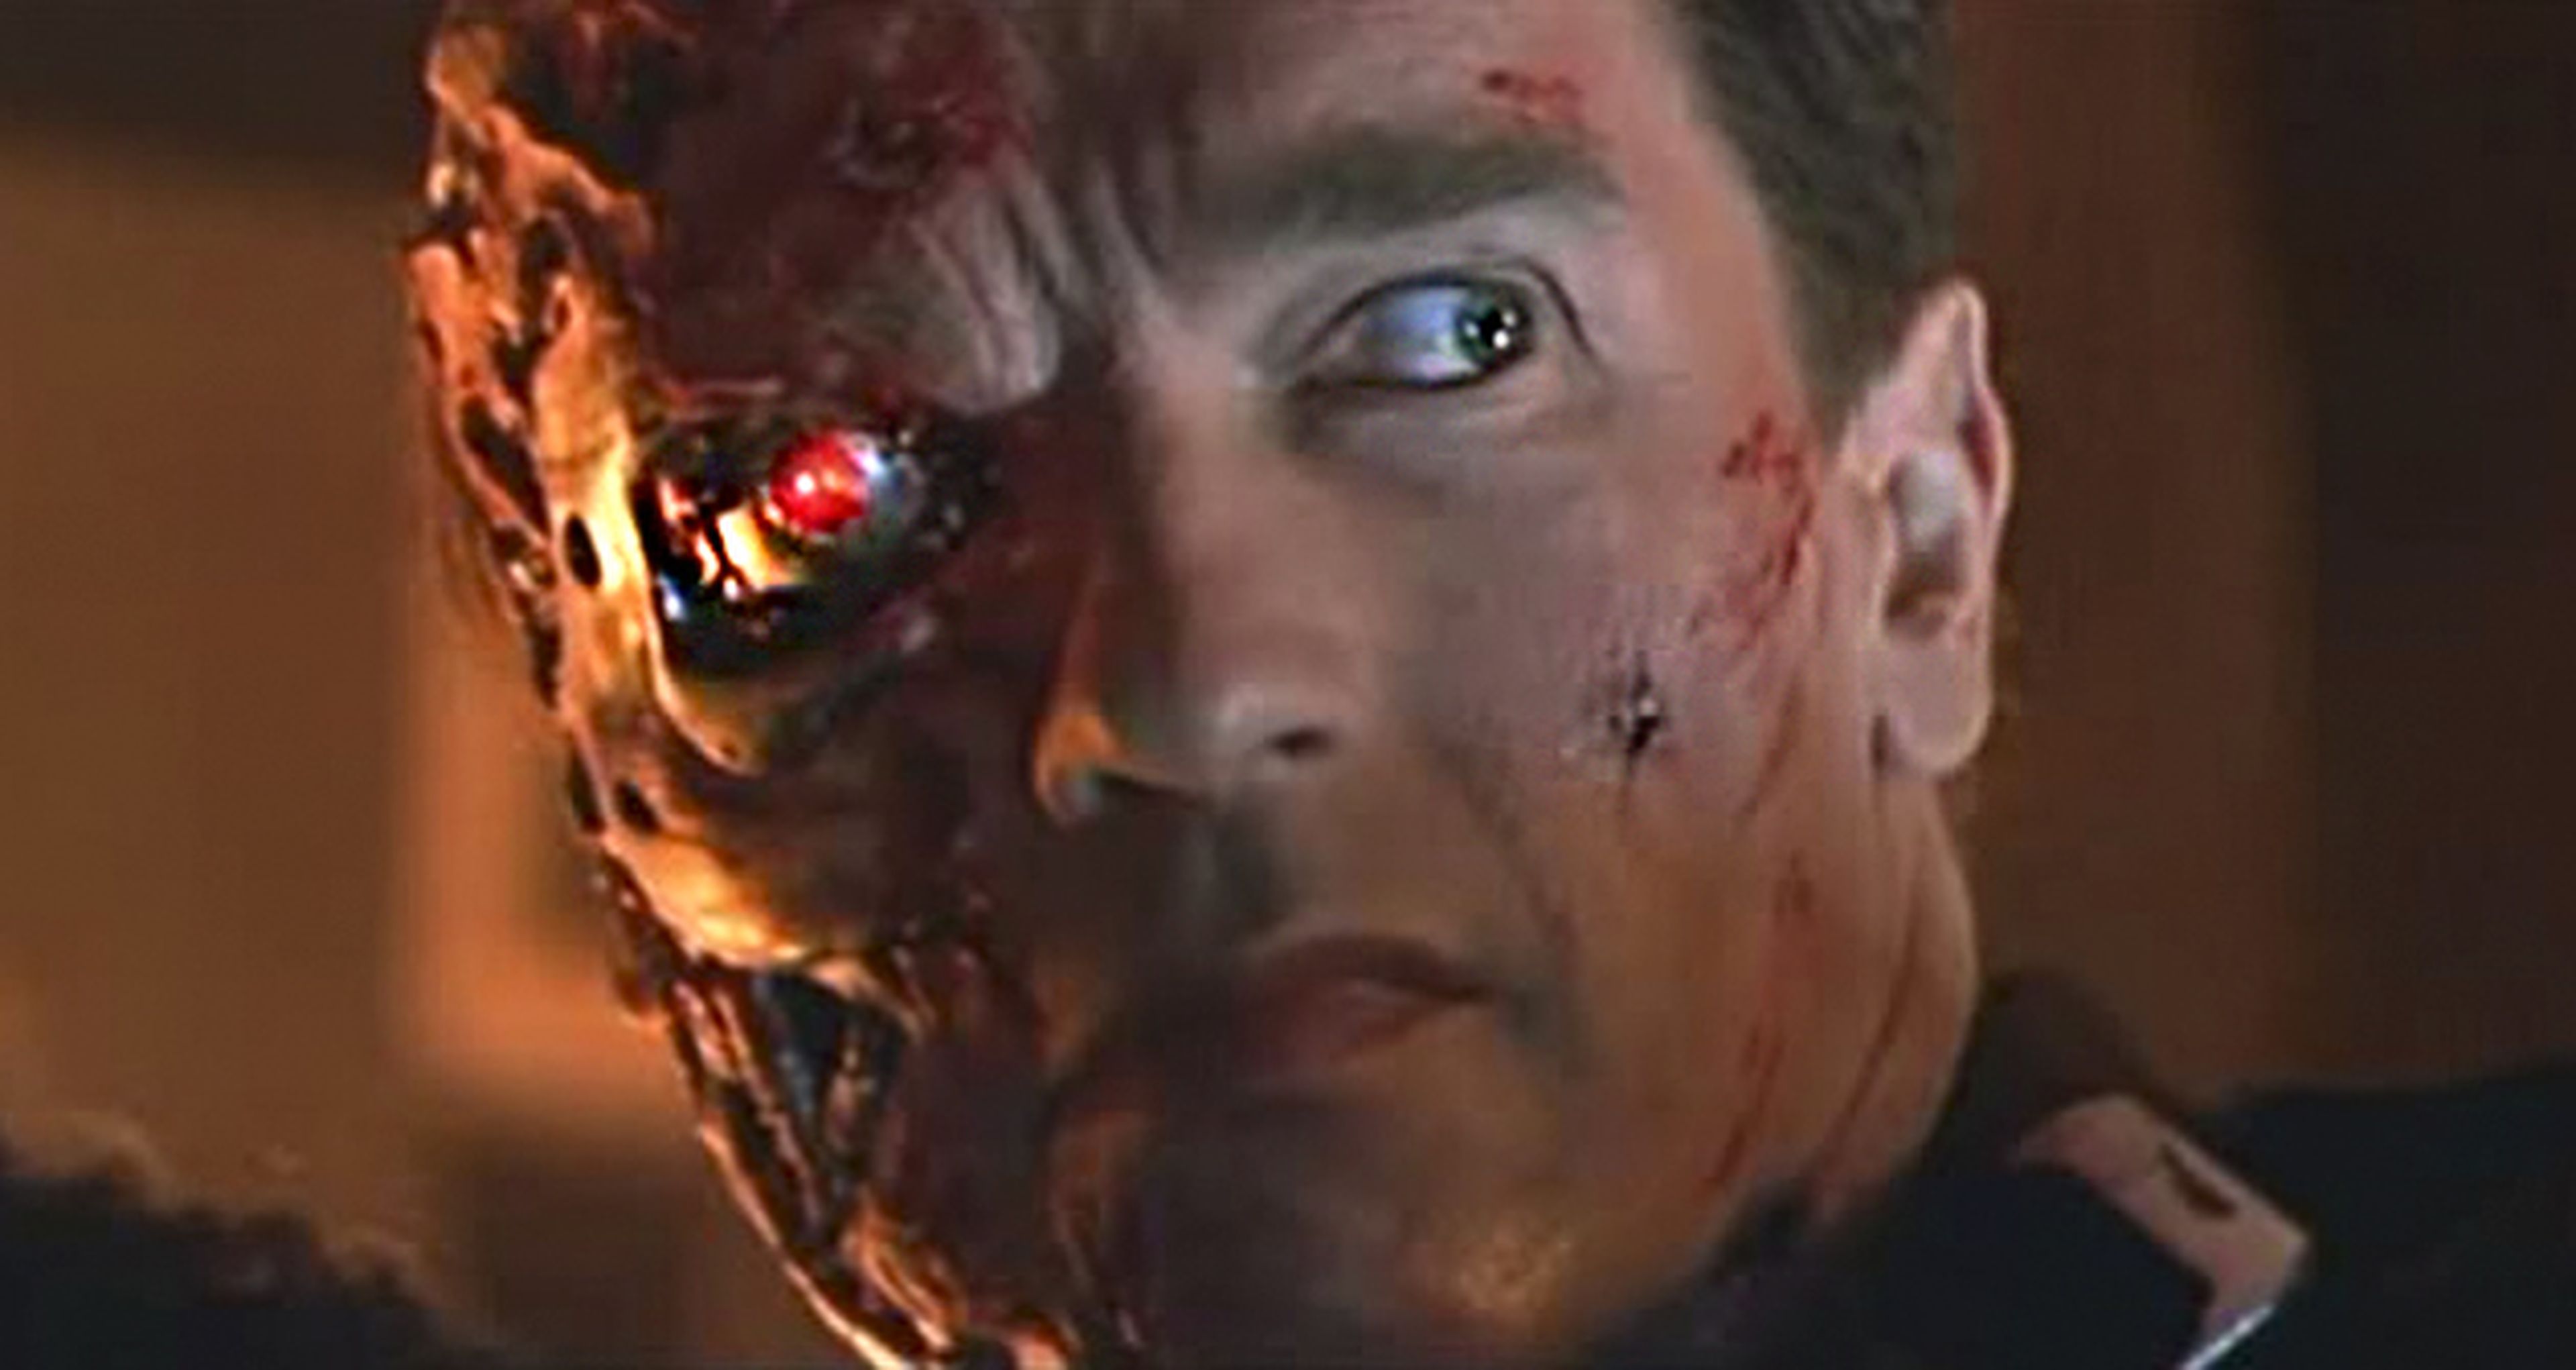 Terminator 6 podría salir adelante según Schwarzenegger